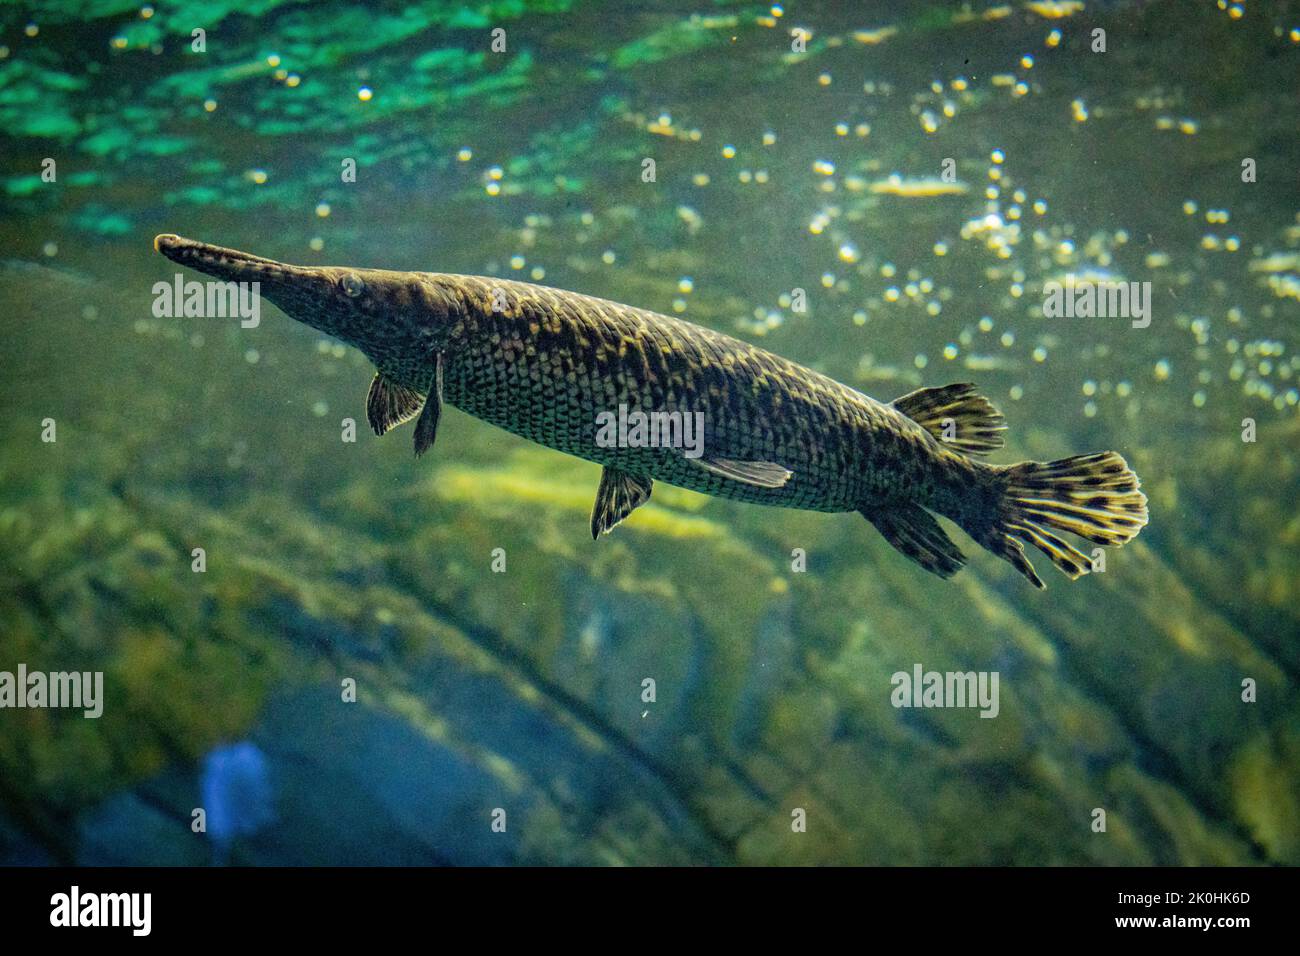 An alligator gar captured underwater Stock Photo